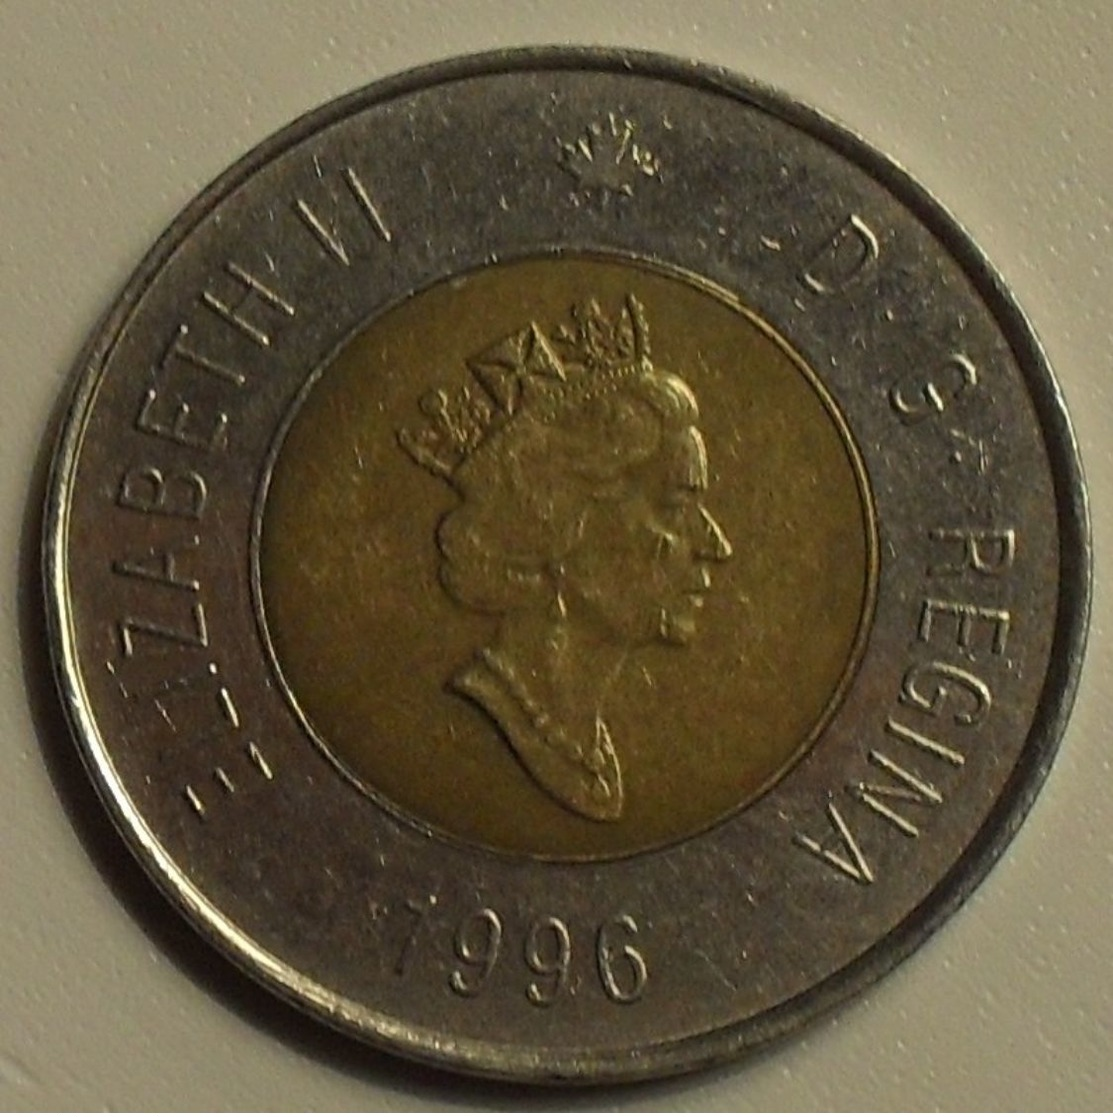 1996 - Canada - 2 DOLLARS, ELIZABETH II, KM 270 - Canada